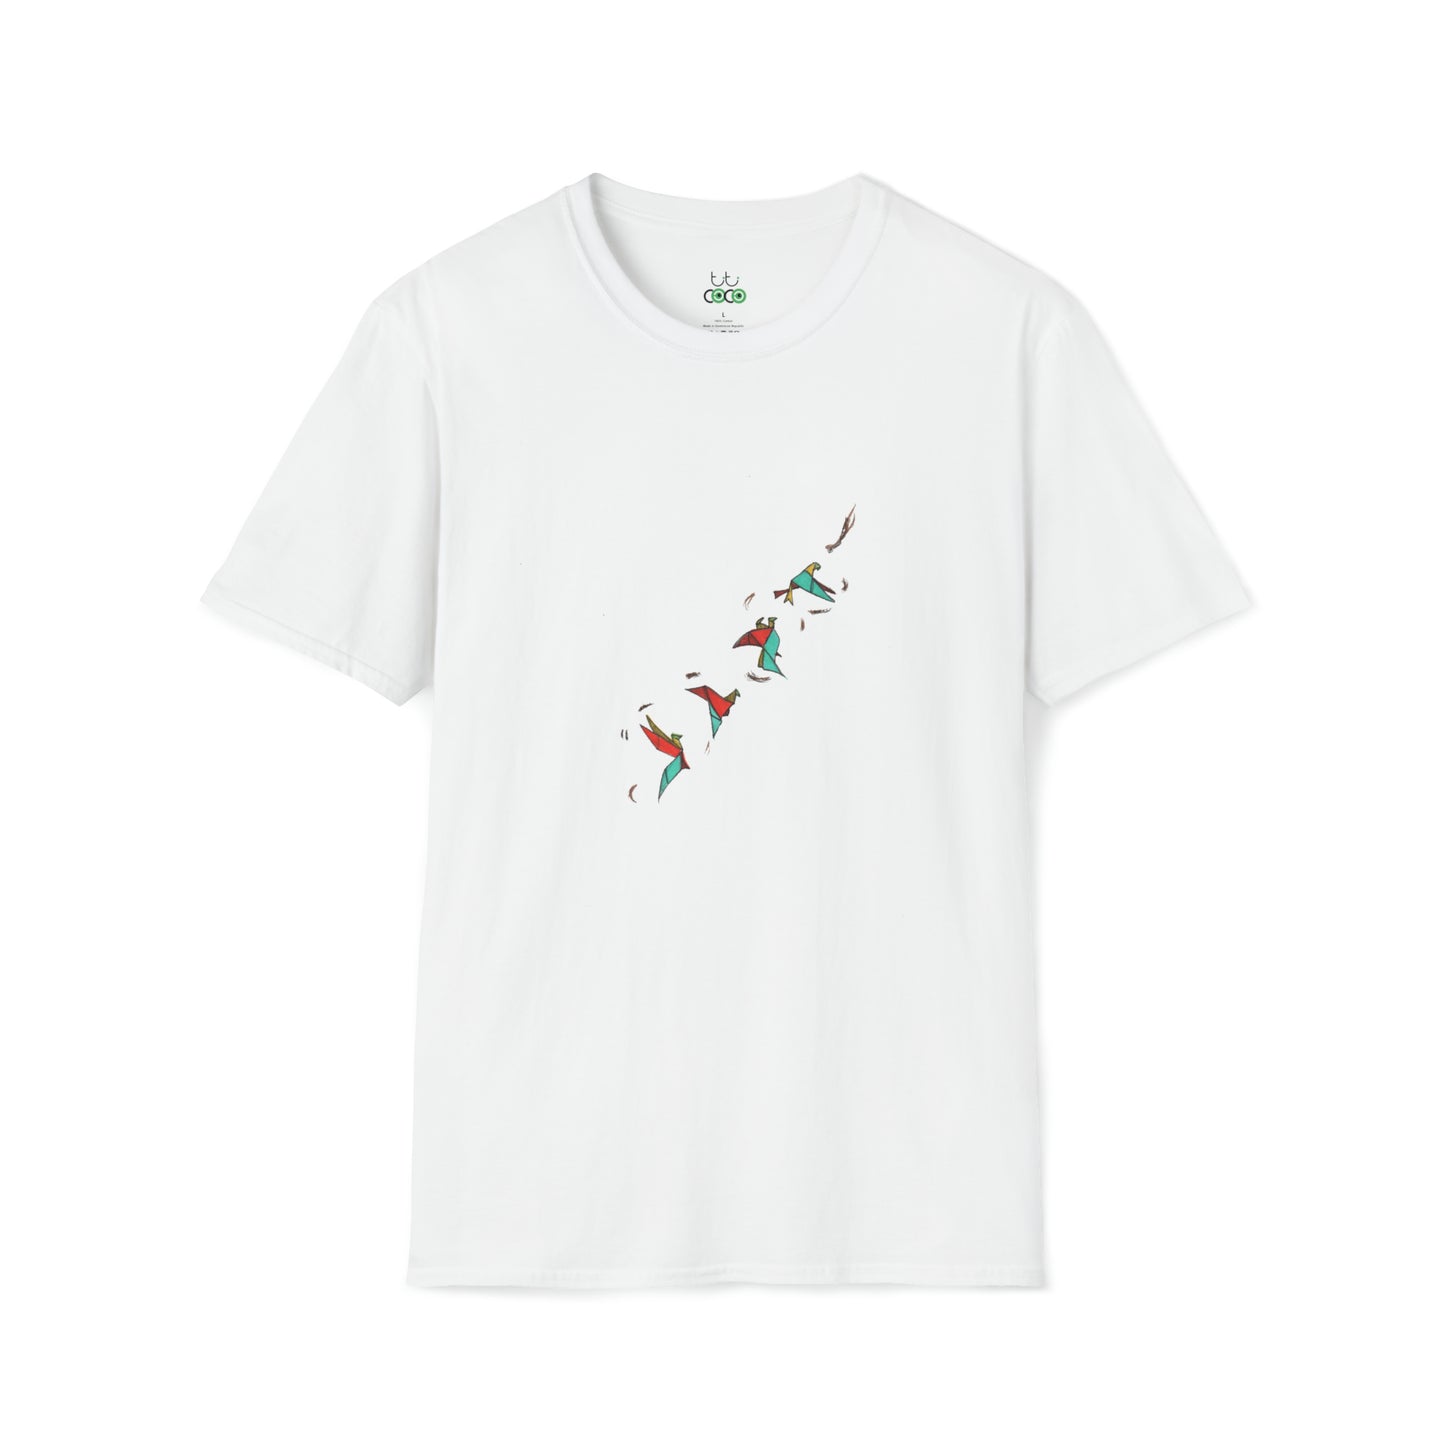 T-Shirt Oiseaux